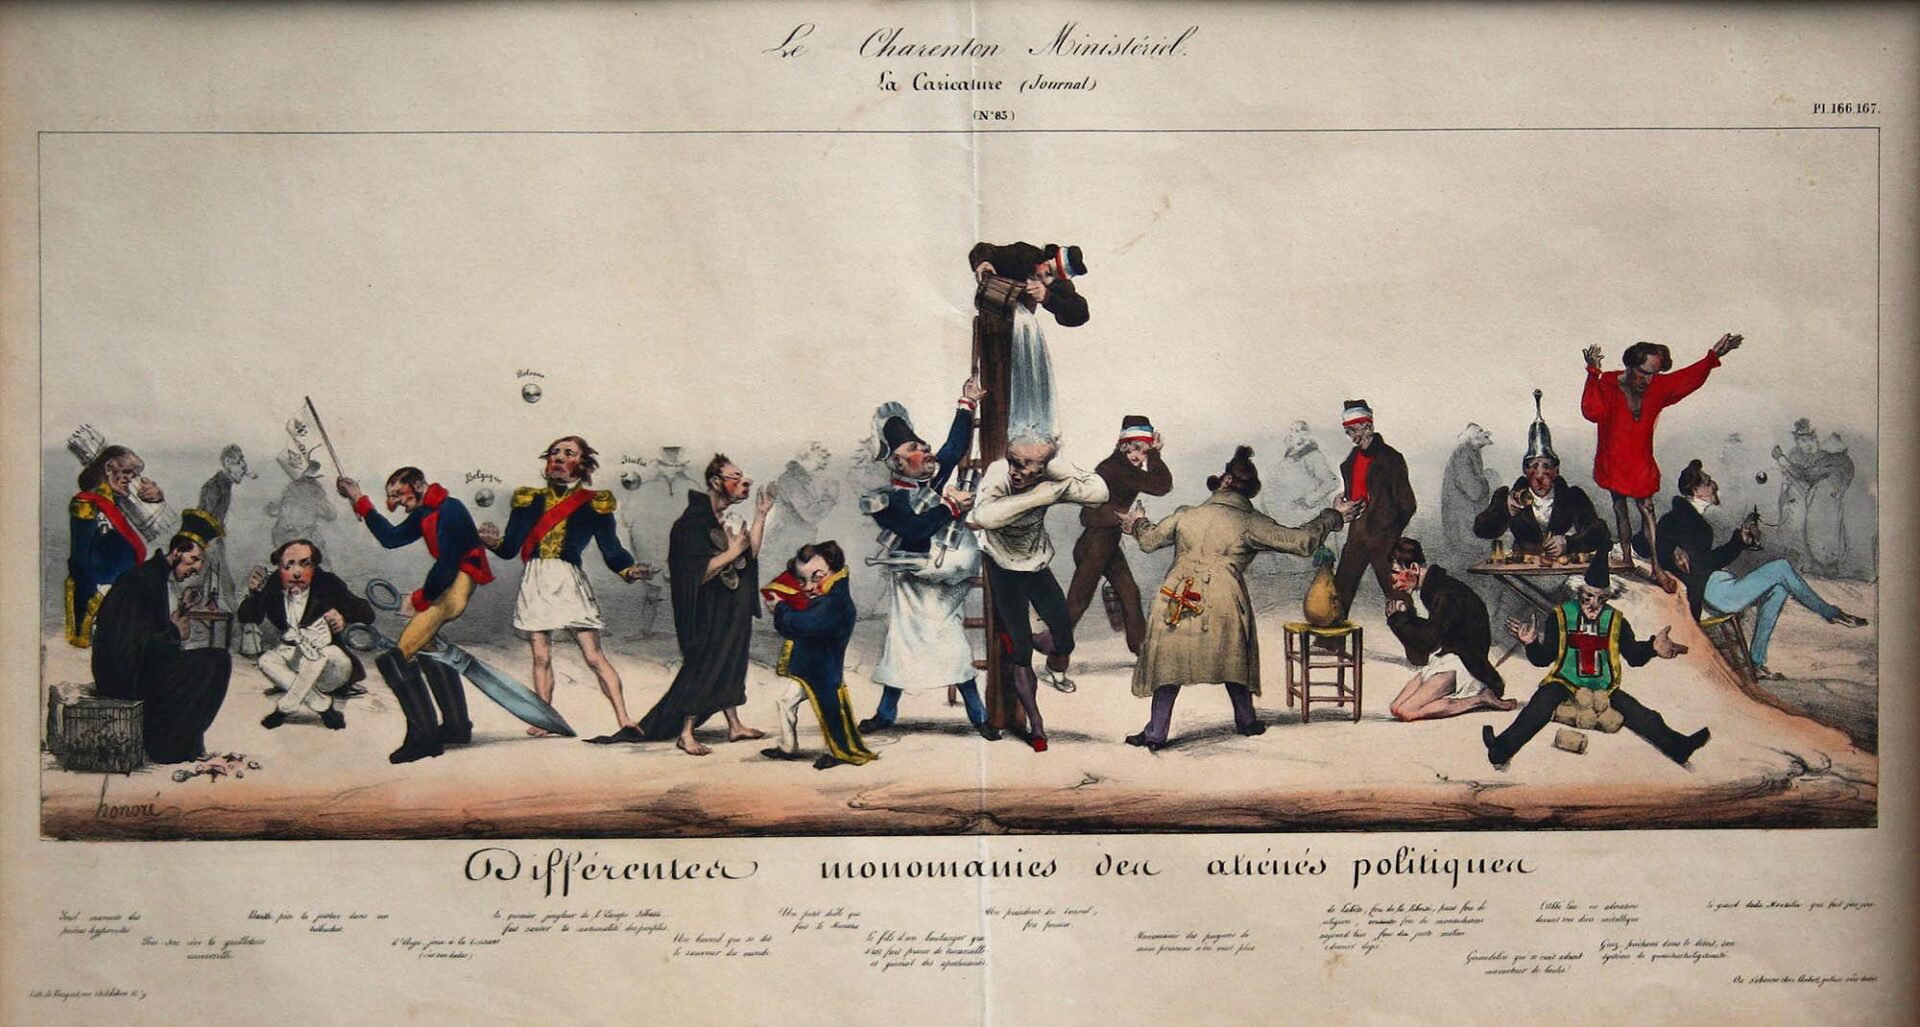 “Διάφορες μονομανίες τρελών πολιτικών” - Daumier Honore